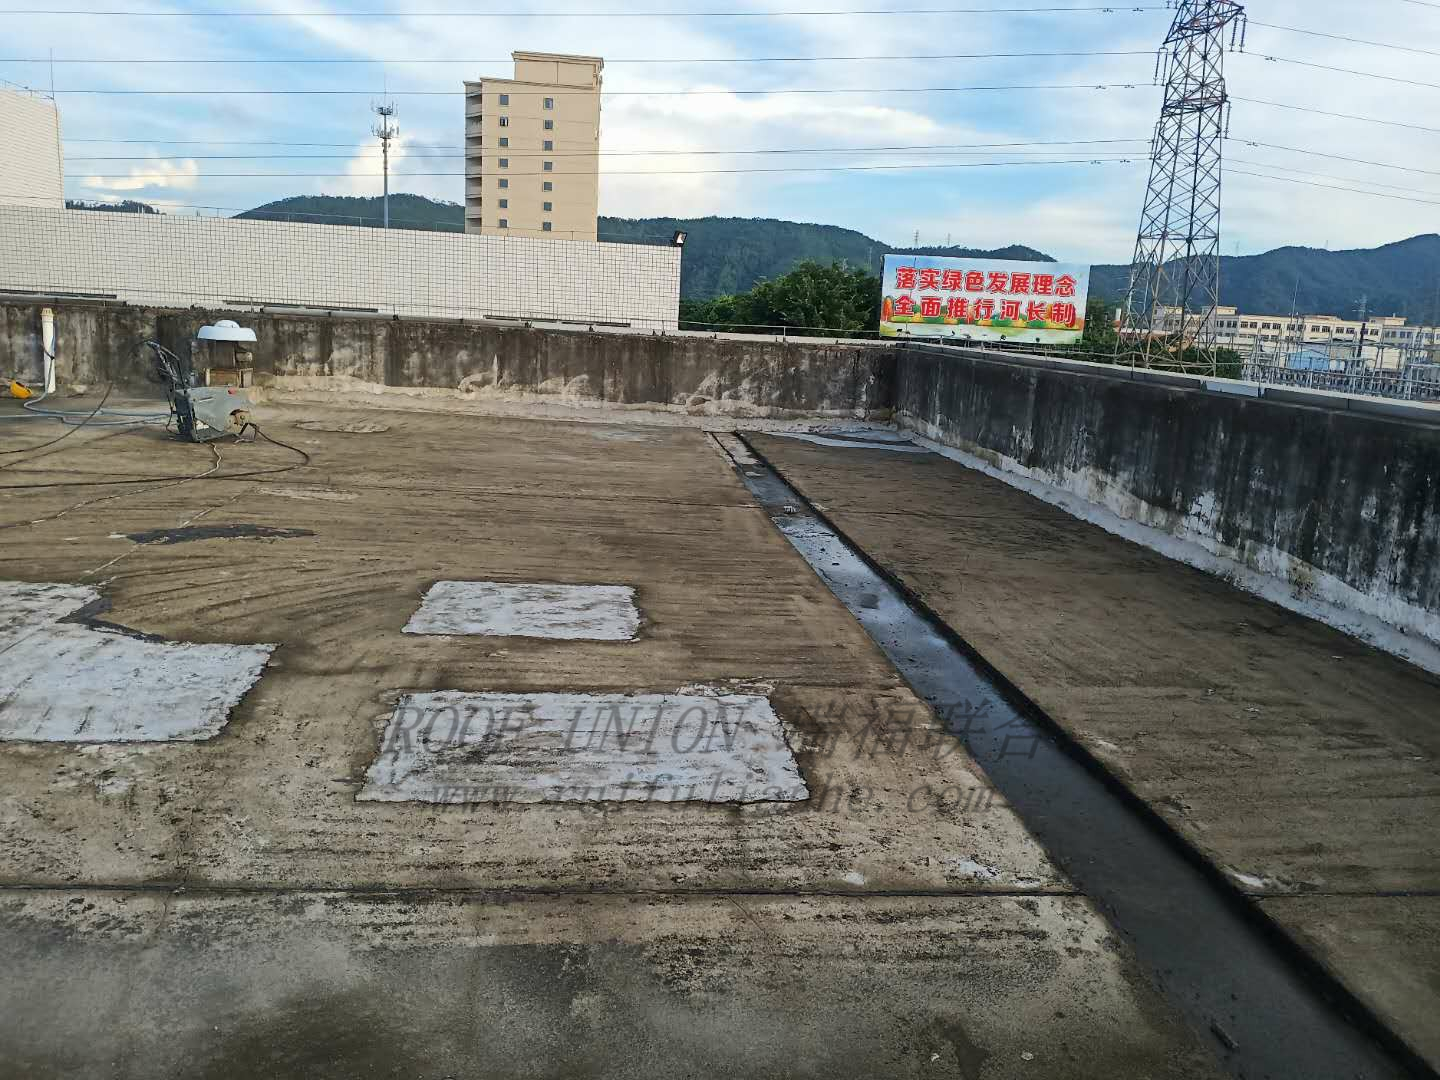   广东某大型摩托车生产企业办公楼屋面防水工程